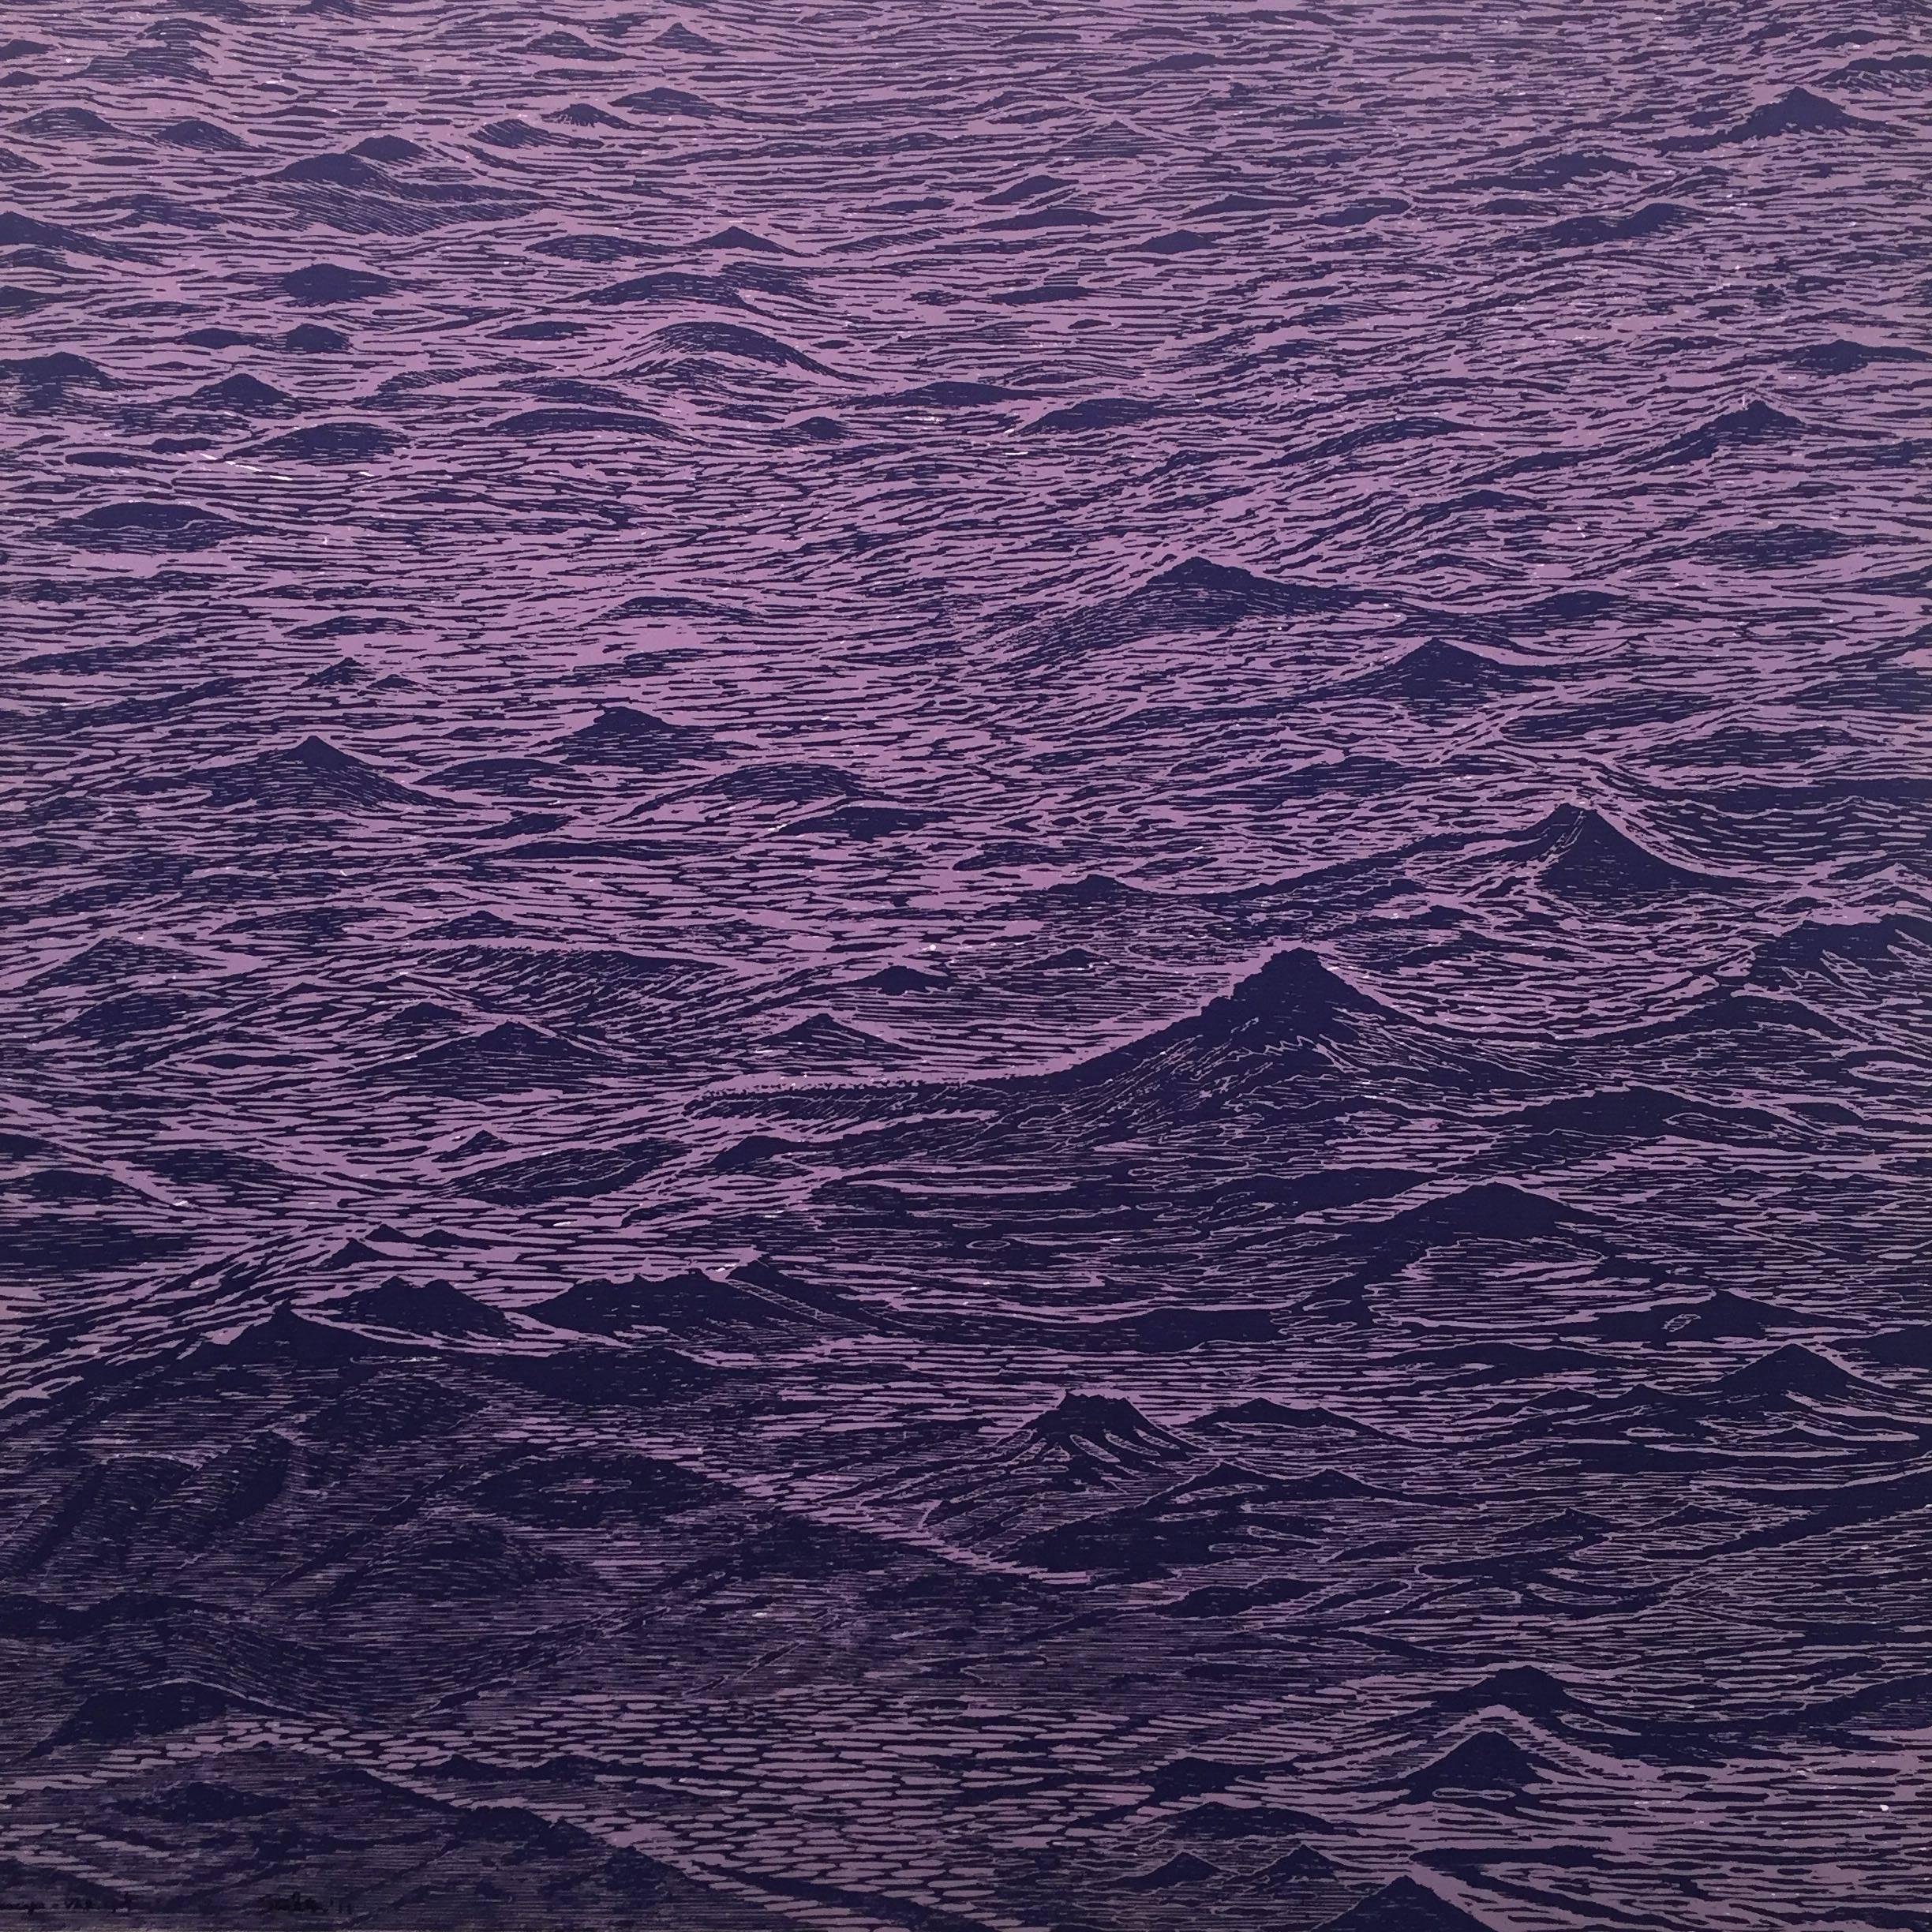 Seascape One, Ocean Waves Woodcut Print in Pale Lavender and Dark Violet Purple